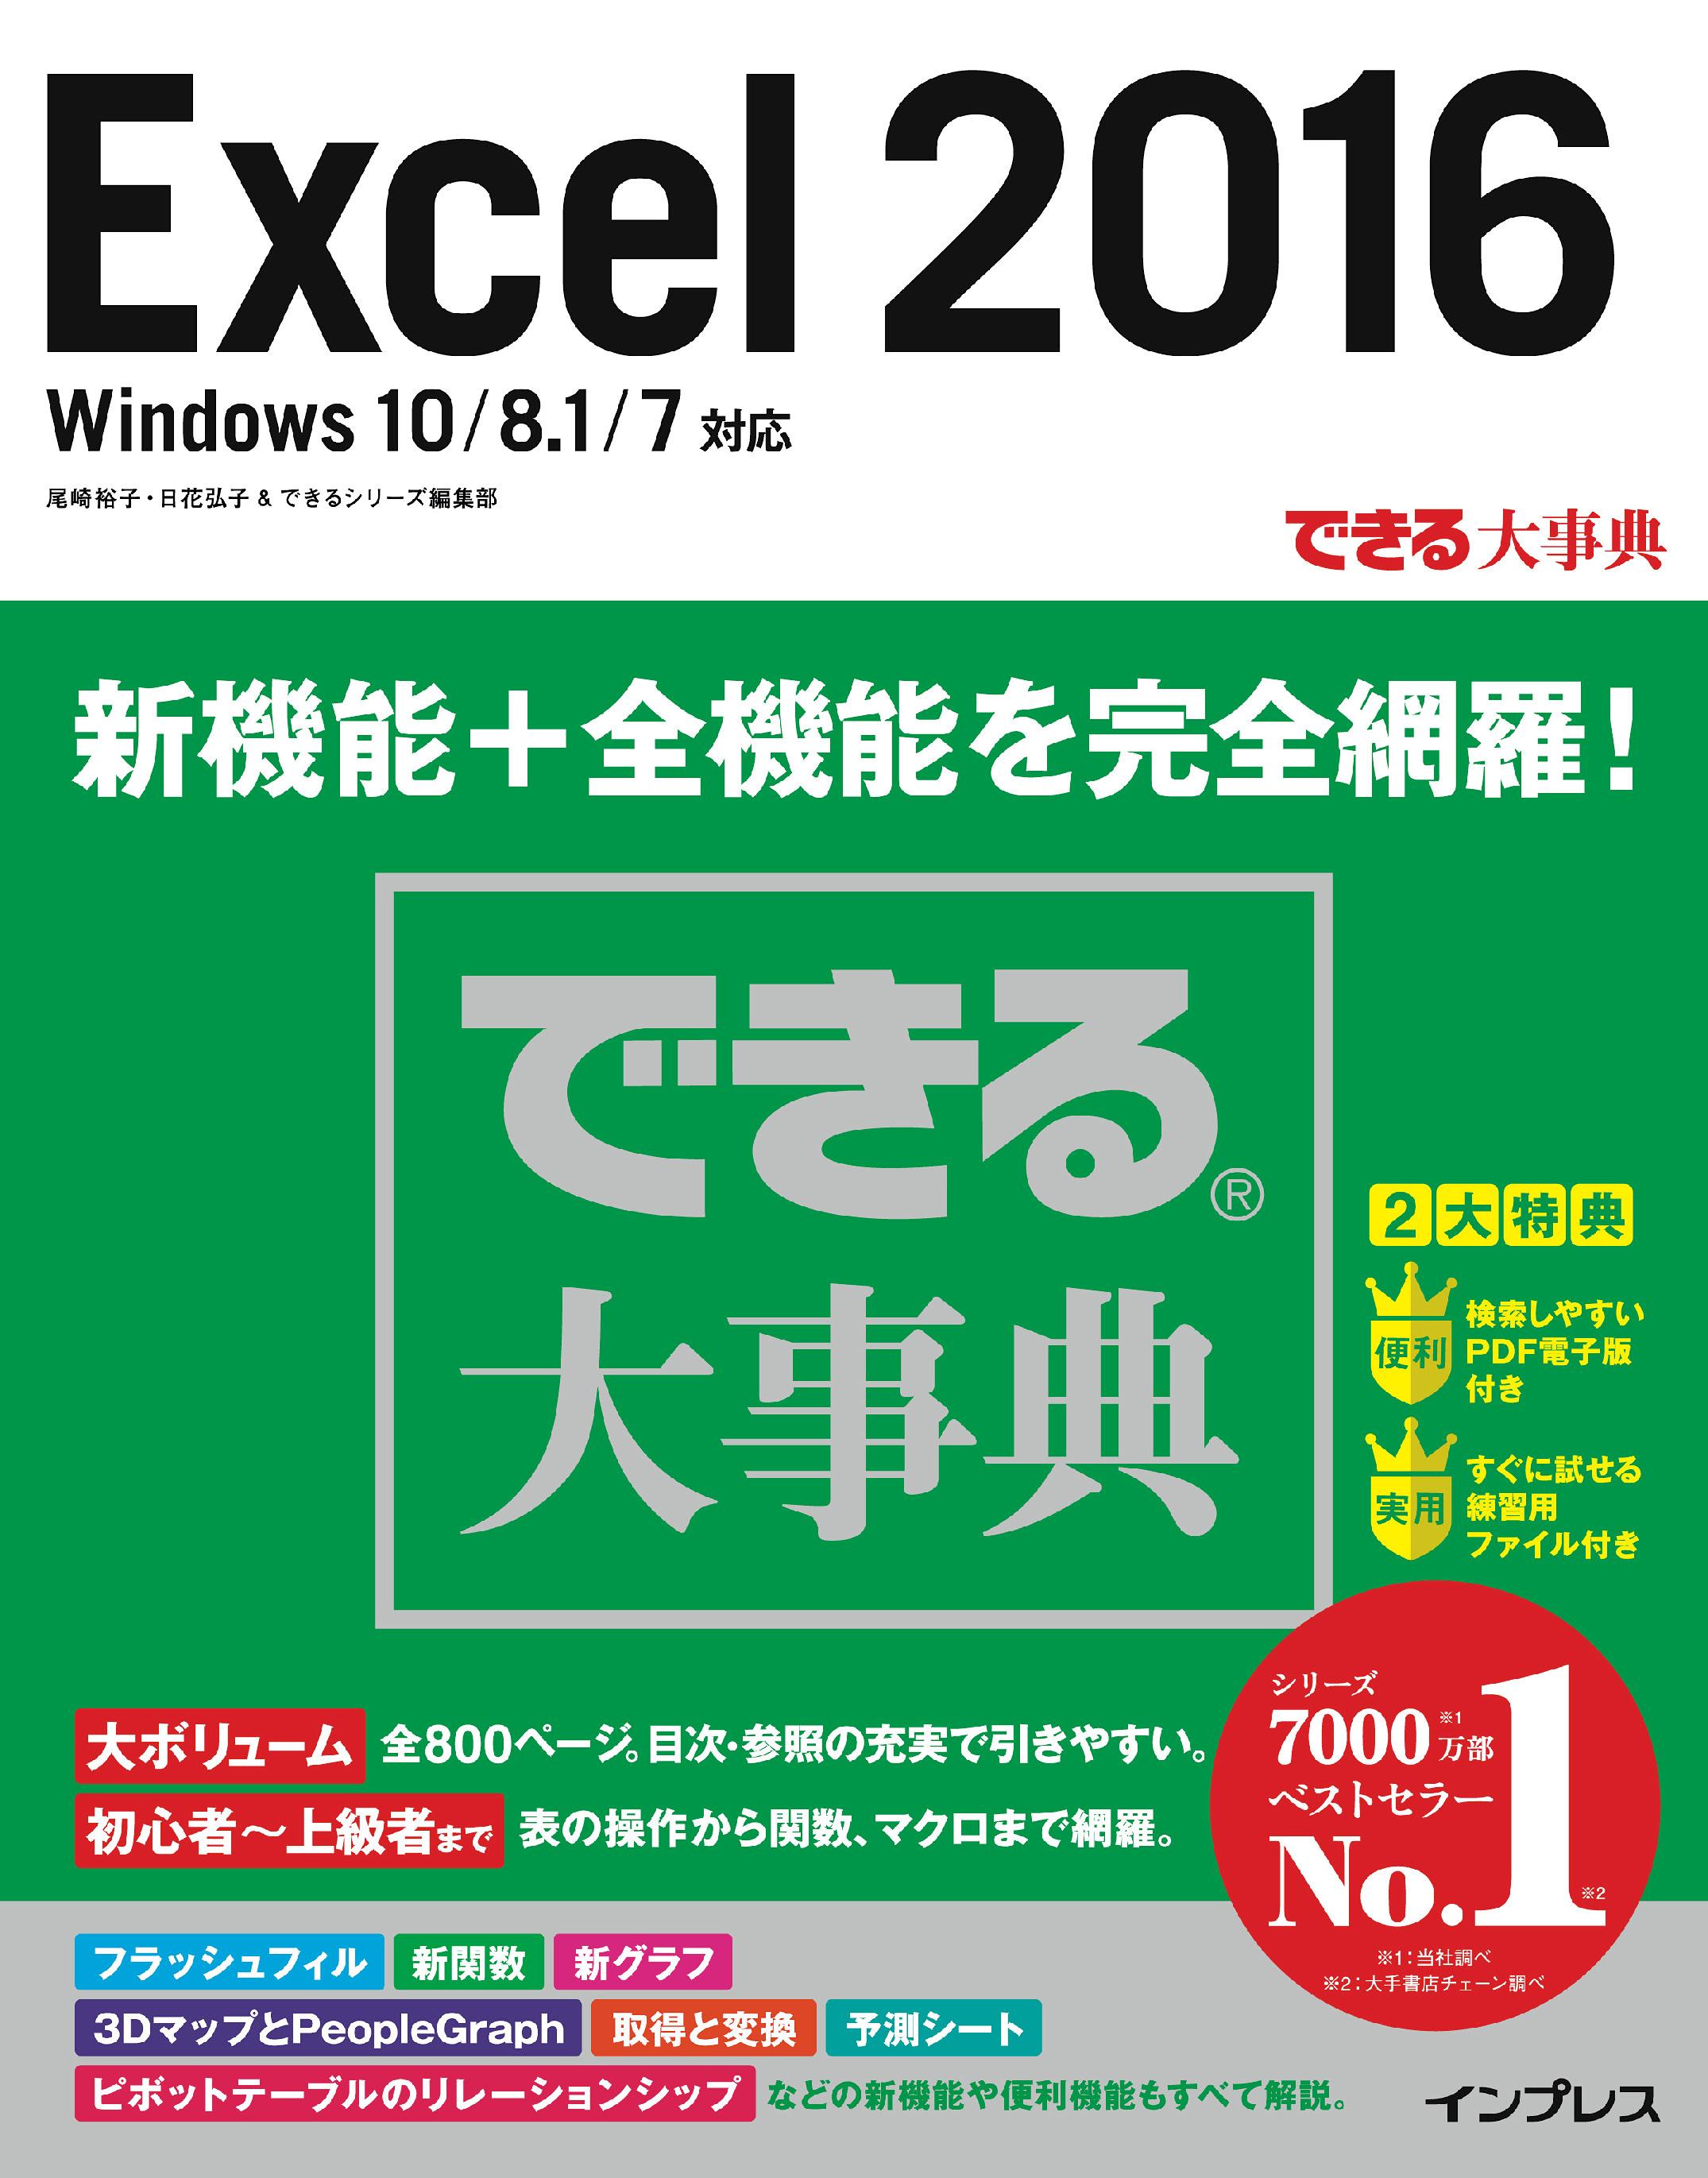 できる大事典 Excel 2016 Windows 10/8.1/7対応